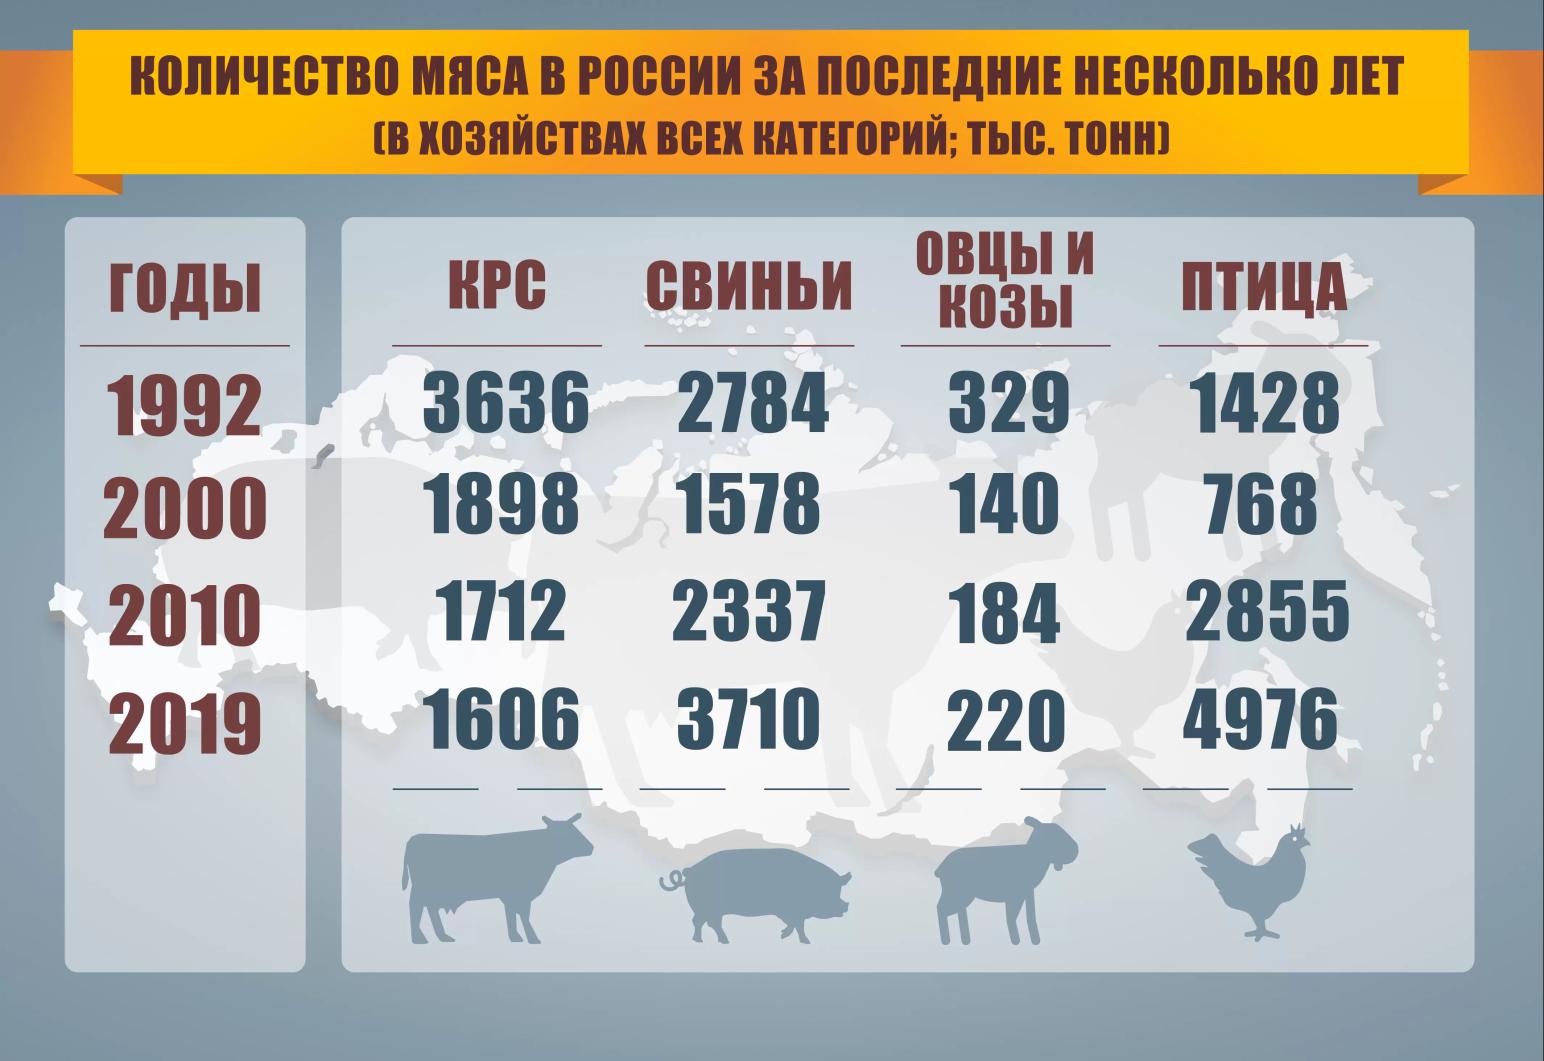 Количество произведенного мяса в России